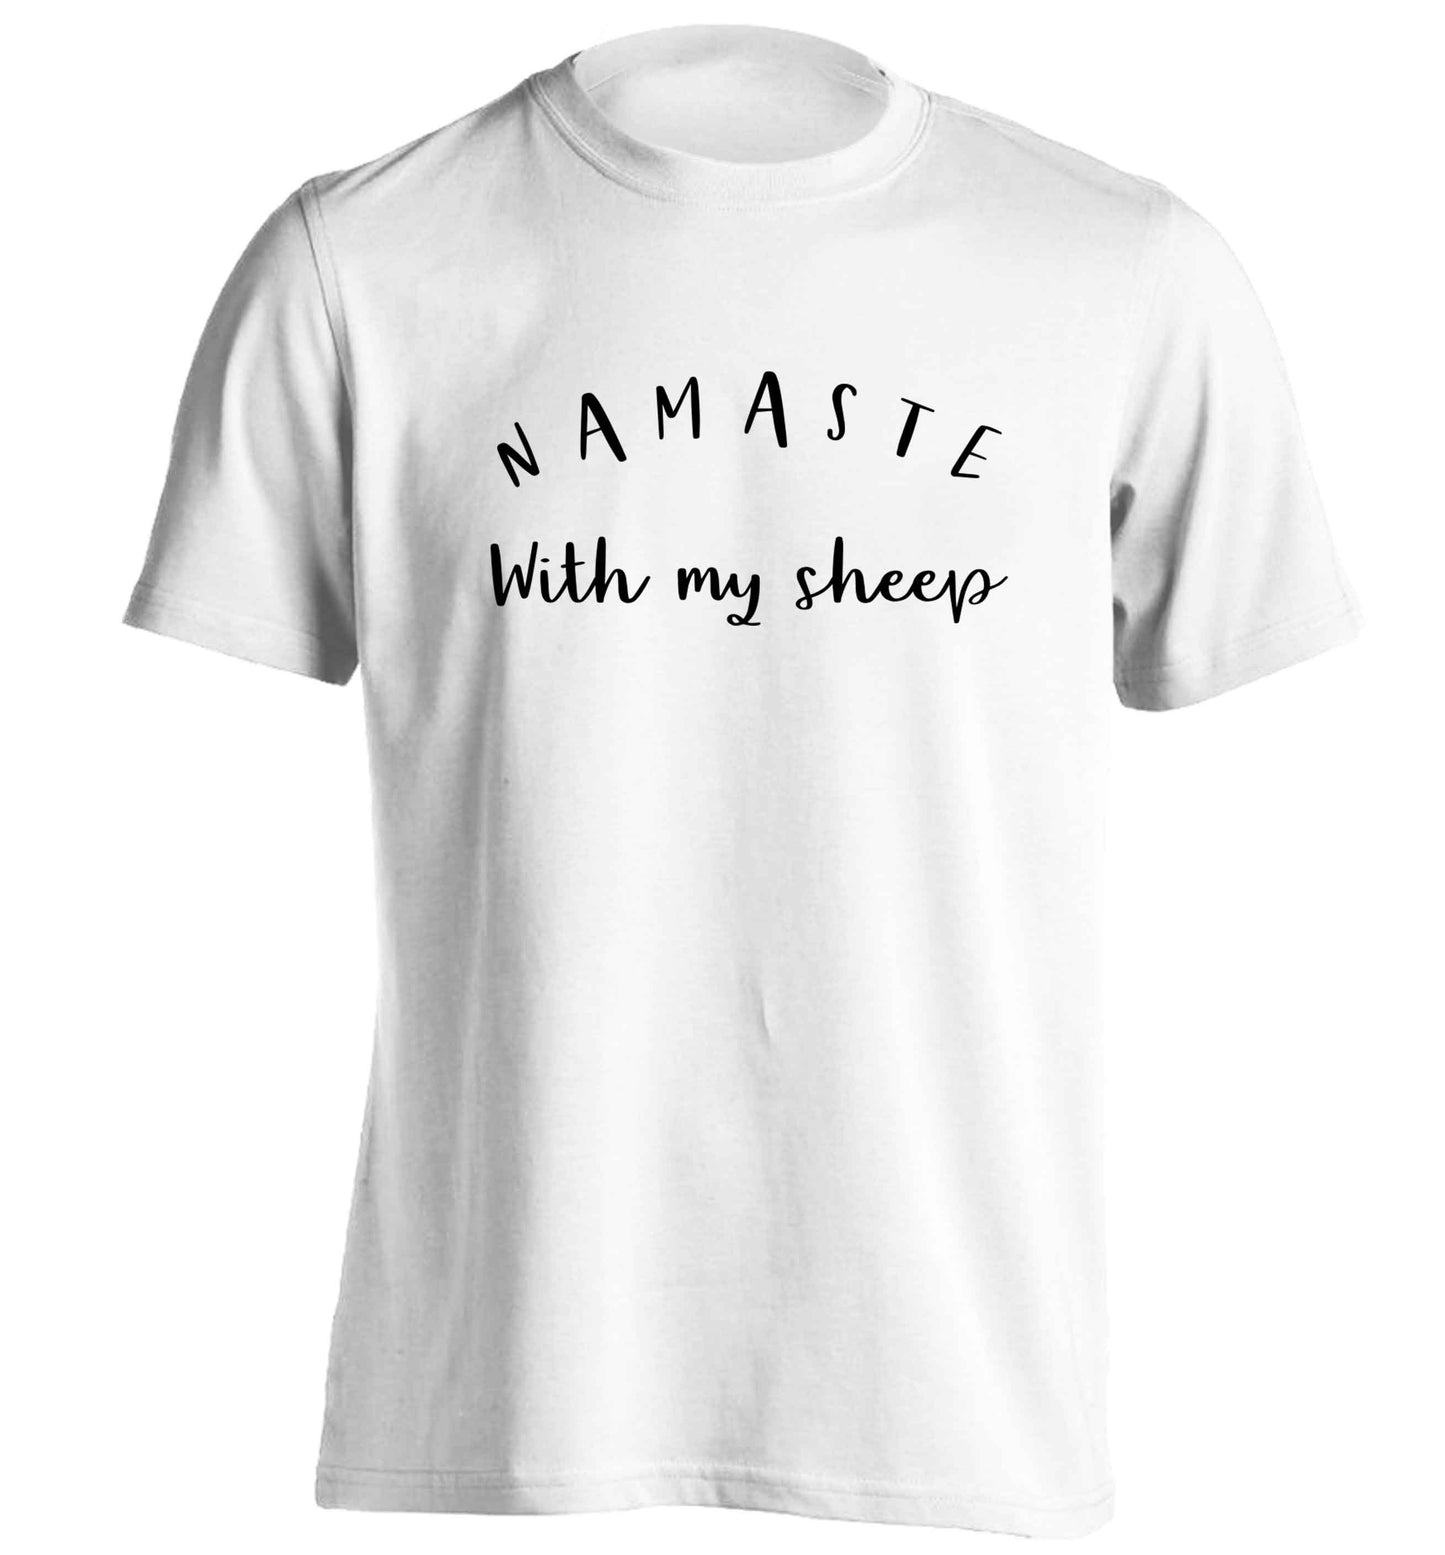 Namaste with my sheep adults unisex white Tshirt 2XL